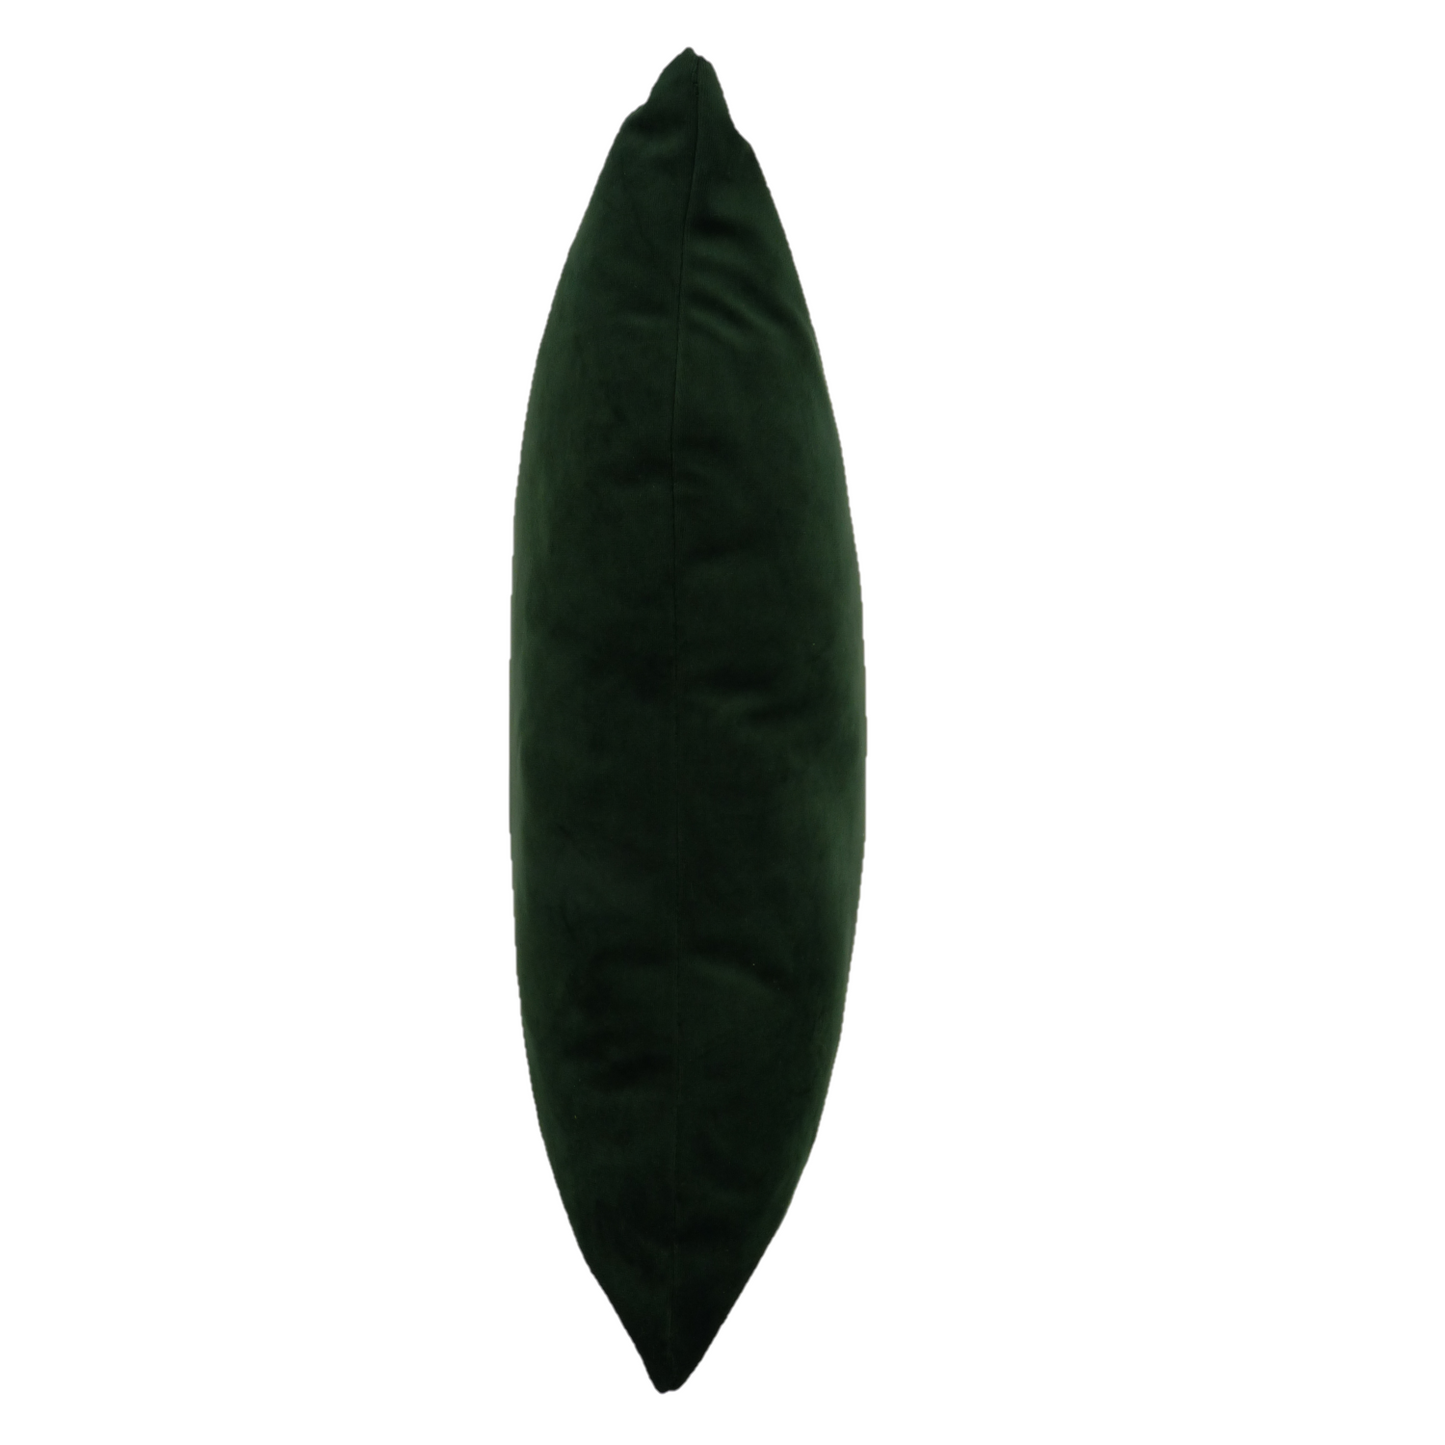 Opulence Bottle Green Velvet Cushion Cover (50cm x 50cm)